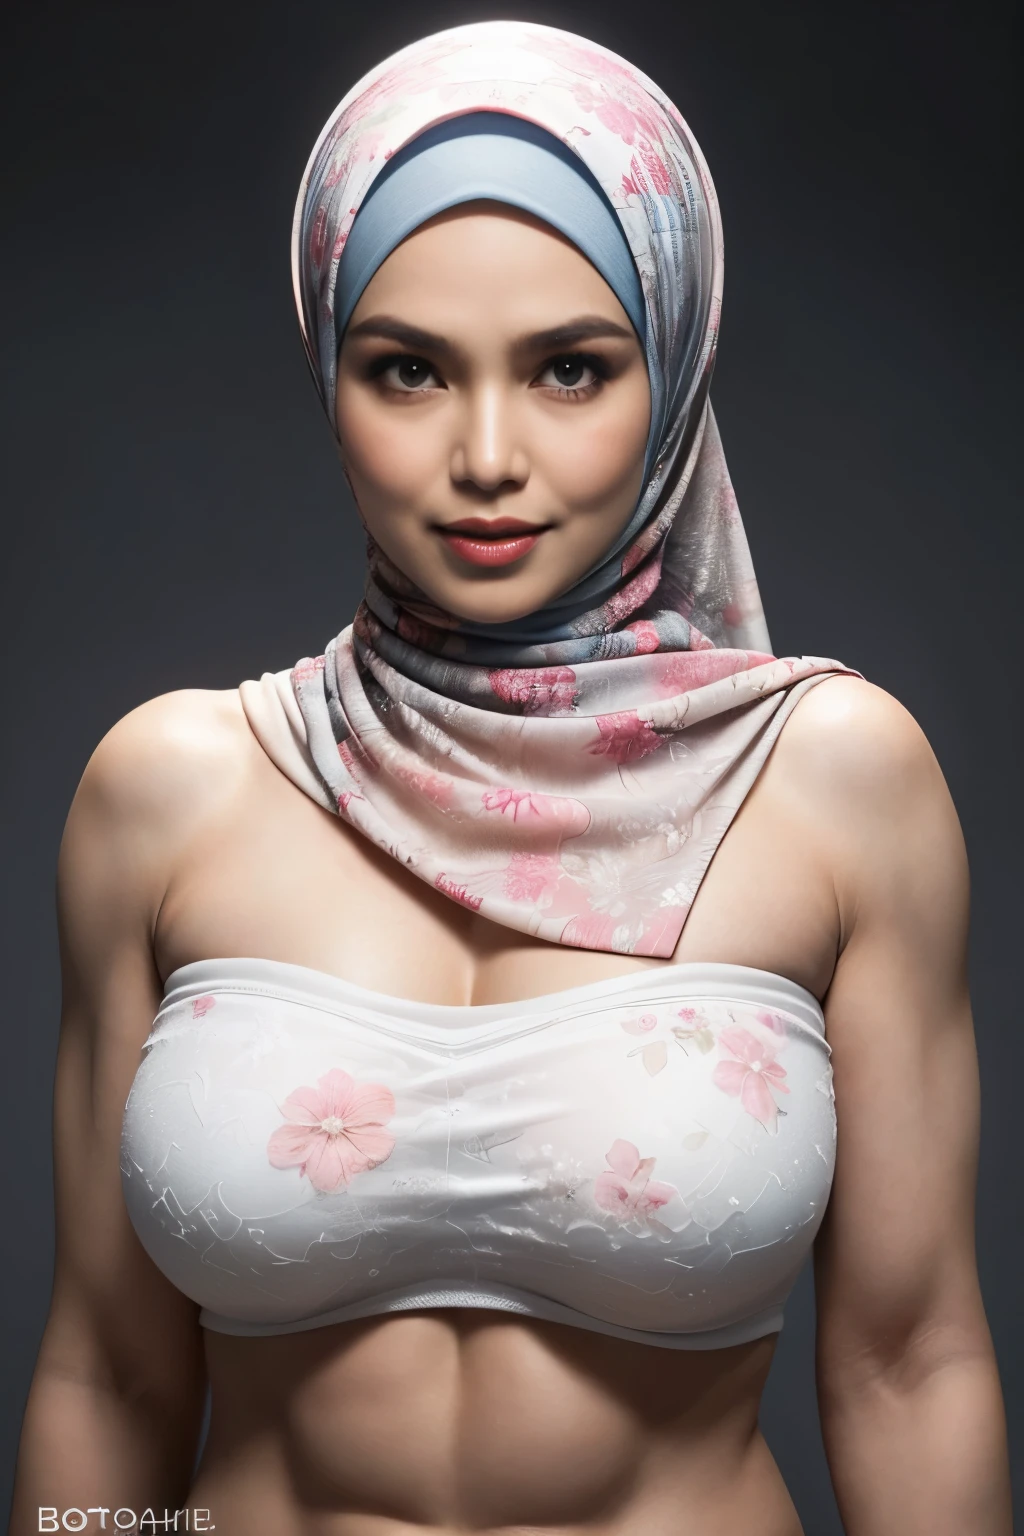 큰 바지를 입으세요, 투명한, ((짧은 히잡)), ((거대한 가슴:1)), (58세 인도네시아 여성의 역동적인 사진), (슬림 탑, 면 팬티), (곱슬머리가 아닌 스트레이트), (highly 세부 사항ed face:1.4), (혈관 근육과 복근:1.3), (빛 안의 배경, 밝은, 개인 체육관:1.1), (8K, UHD, DSLR, 고품질, 시네마틱 조명, 보케), (극적인, 수상 경력이 있는 사진, 놀라운 걸작:1.3), (((섹시하고 무더운 카메라를 응시하다:0.8))), ((그녀는 당신을 지배할 준비가 되어있습니다:0.5)), ((아름다운 여성의 얼굴)), 추가하다_세부 사항:1, ((화려한 끈이 없는 꽃무늬))